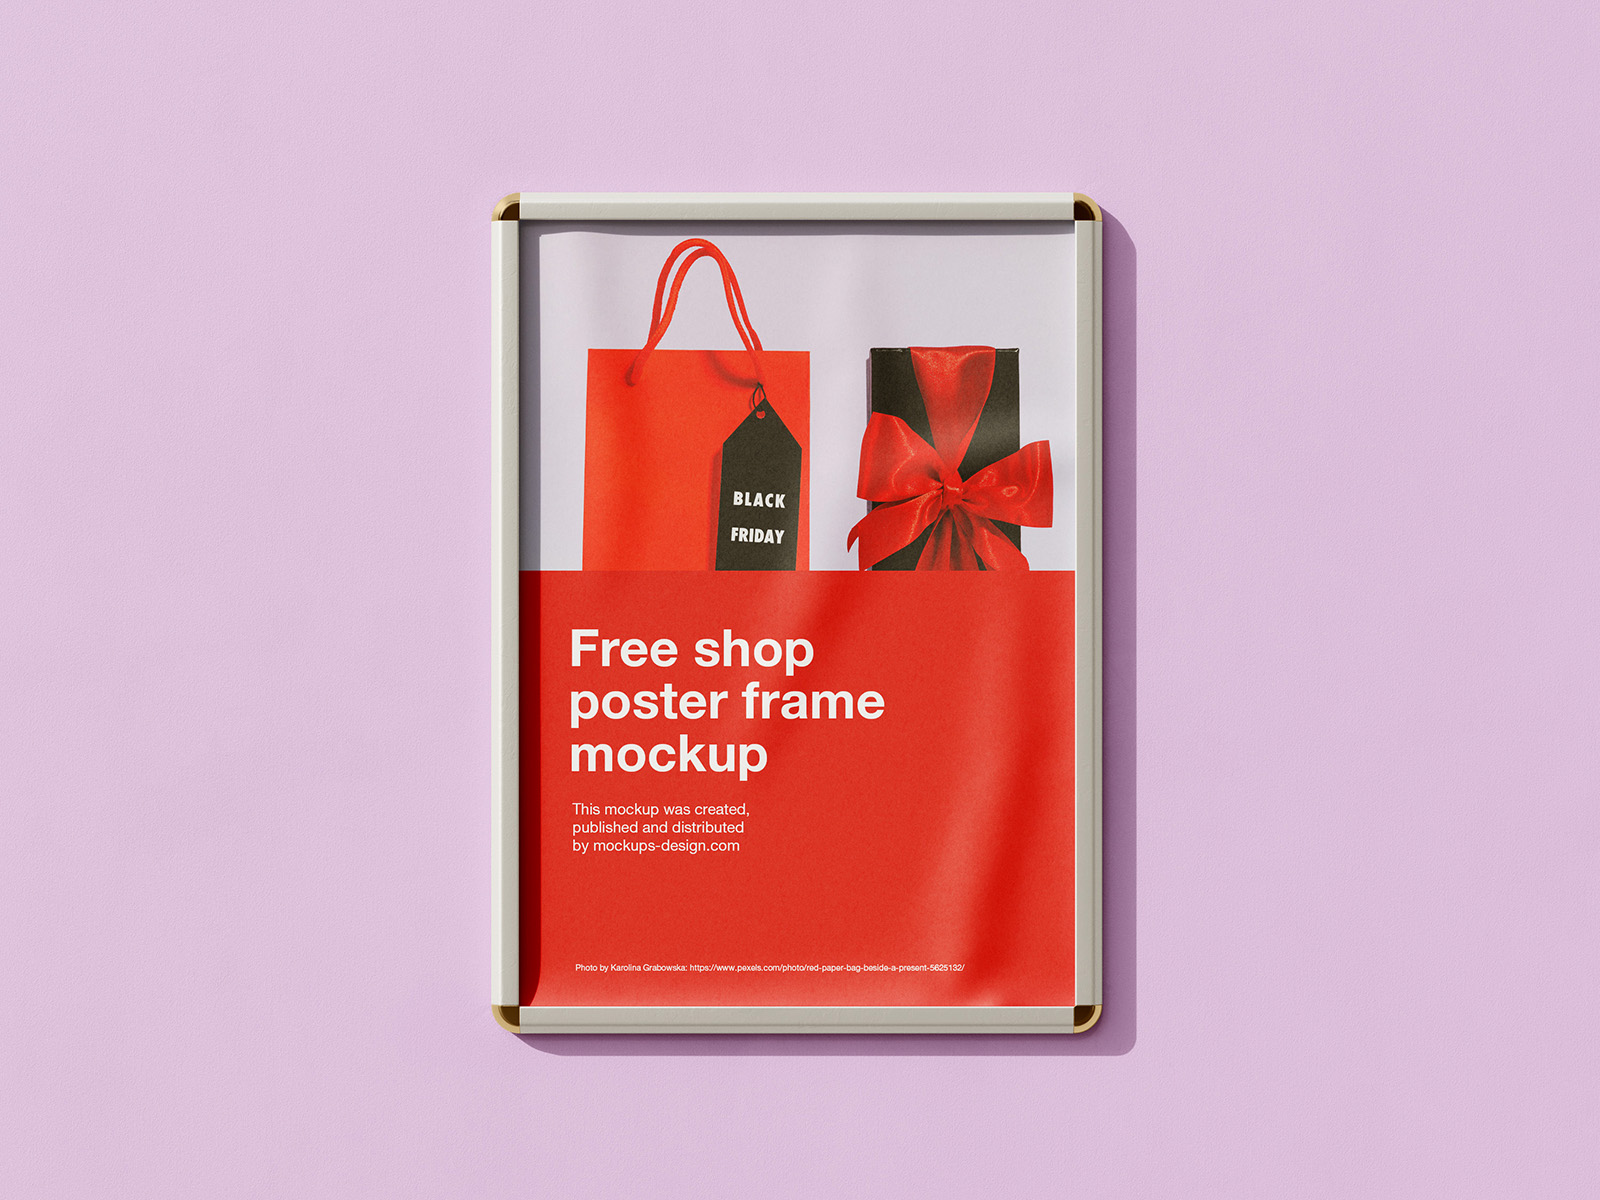 Free shop poster frame mockup